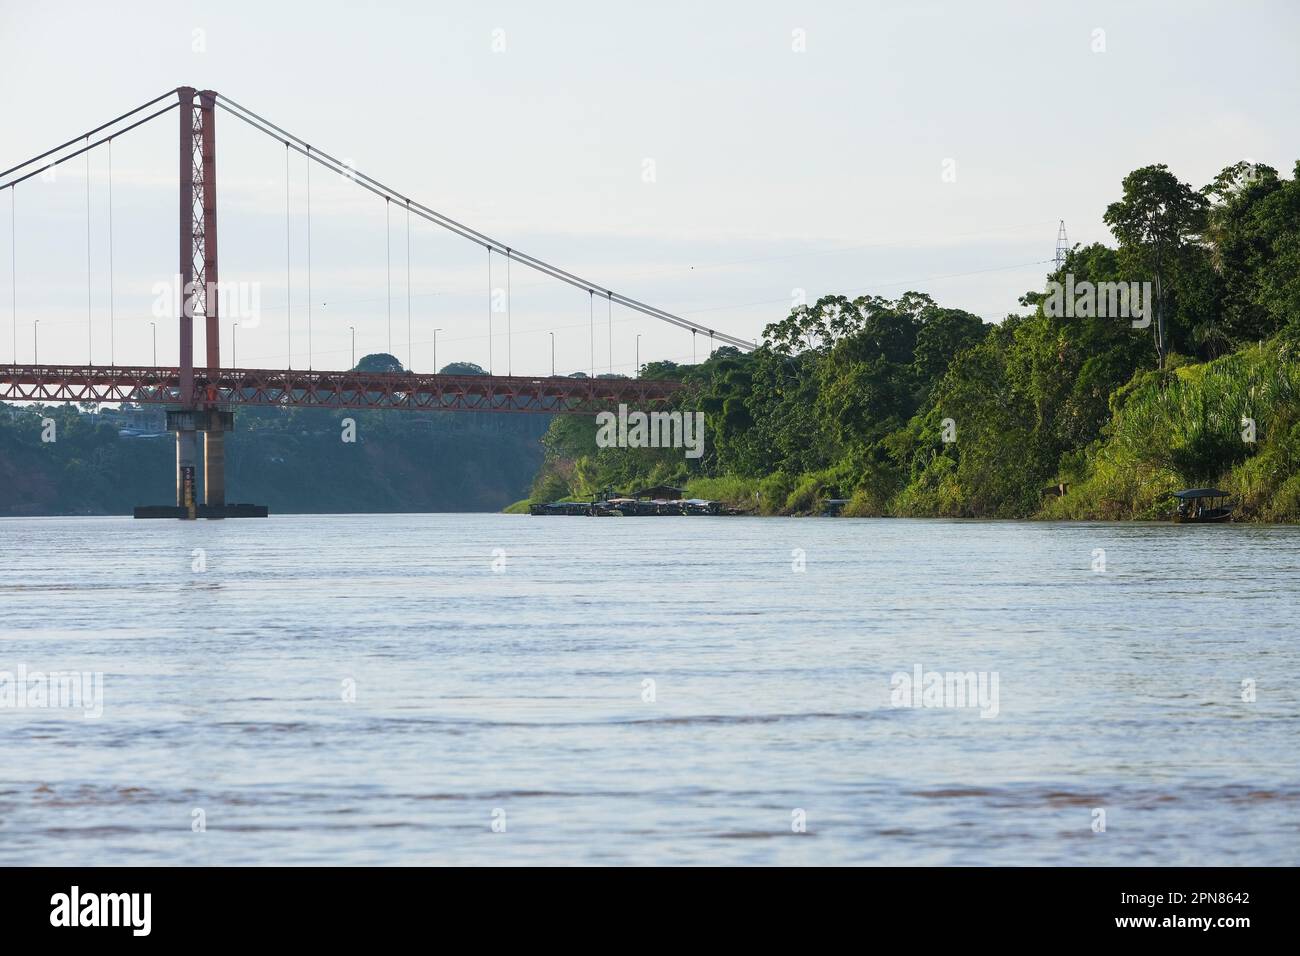 Puerto Maldonado Billinghurst pont rouge avec rivière Amazone, ciel bleu, fond de forêt au Pérou. Foyer sélectif de la rivière. Espace ouvert. Banque D'Images